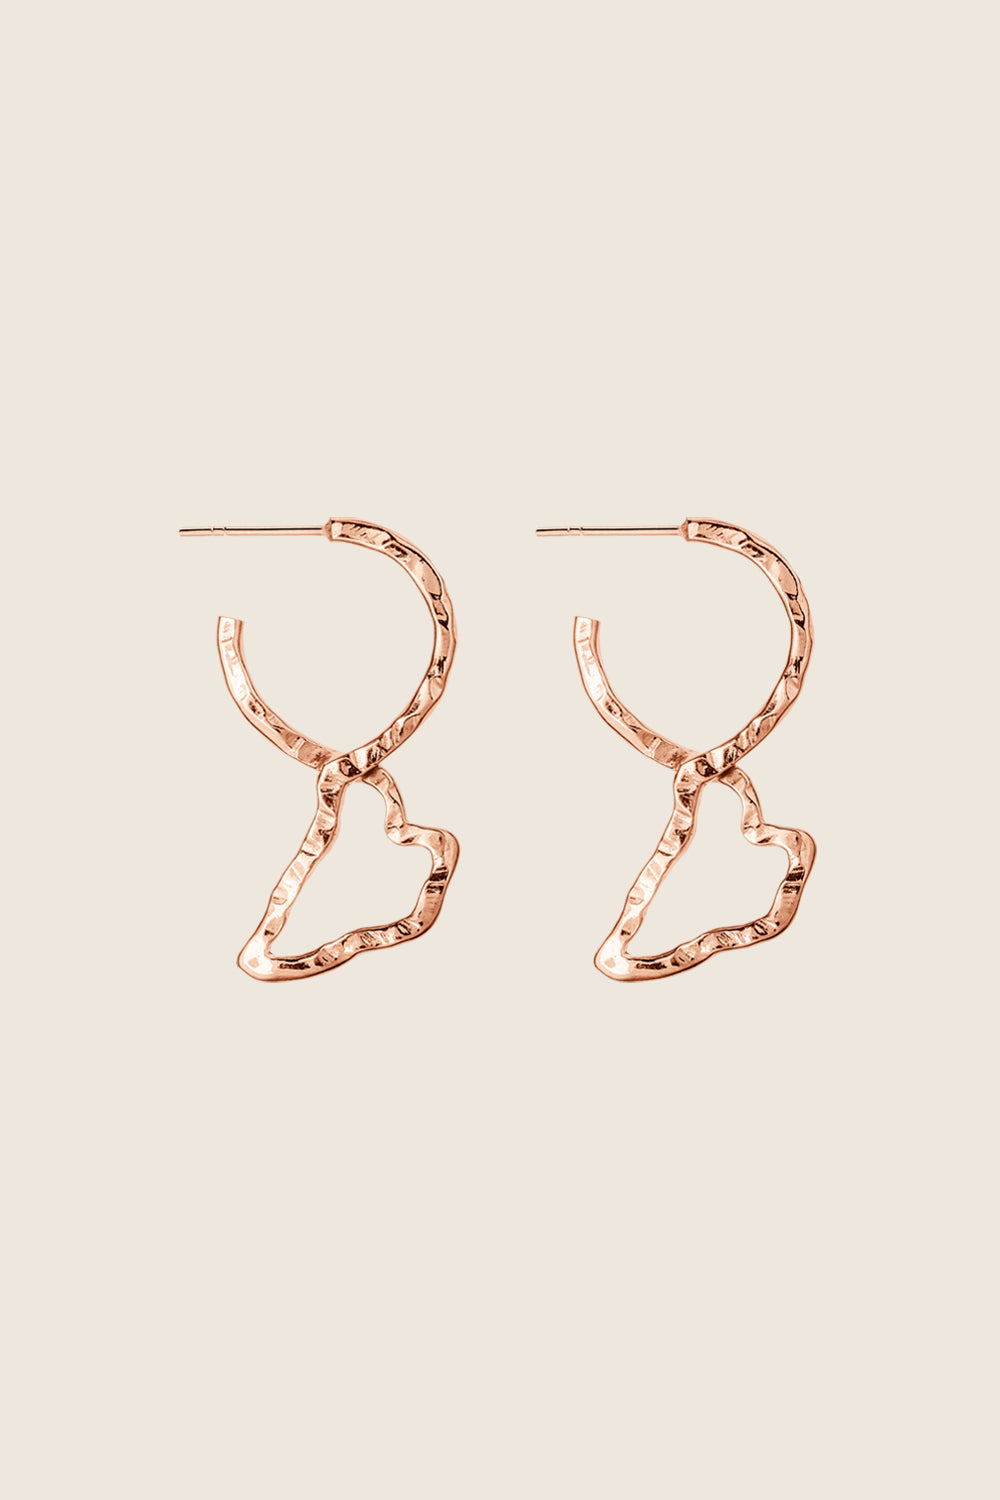 DORSA rose earrings